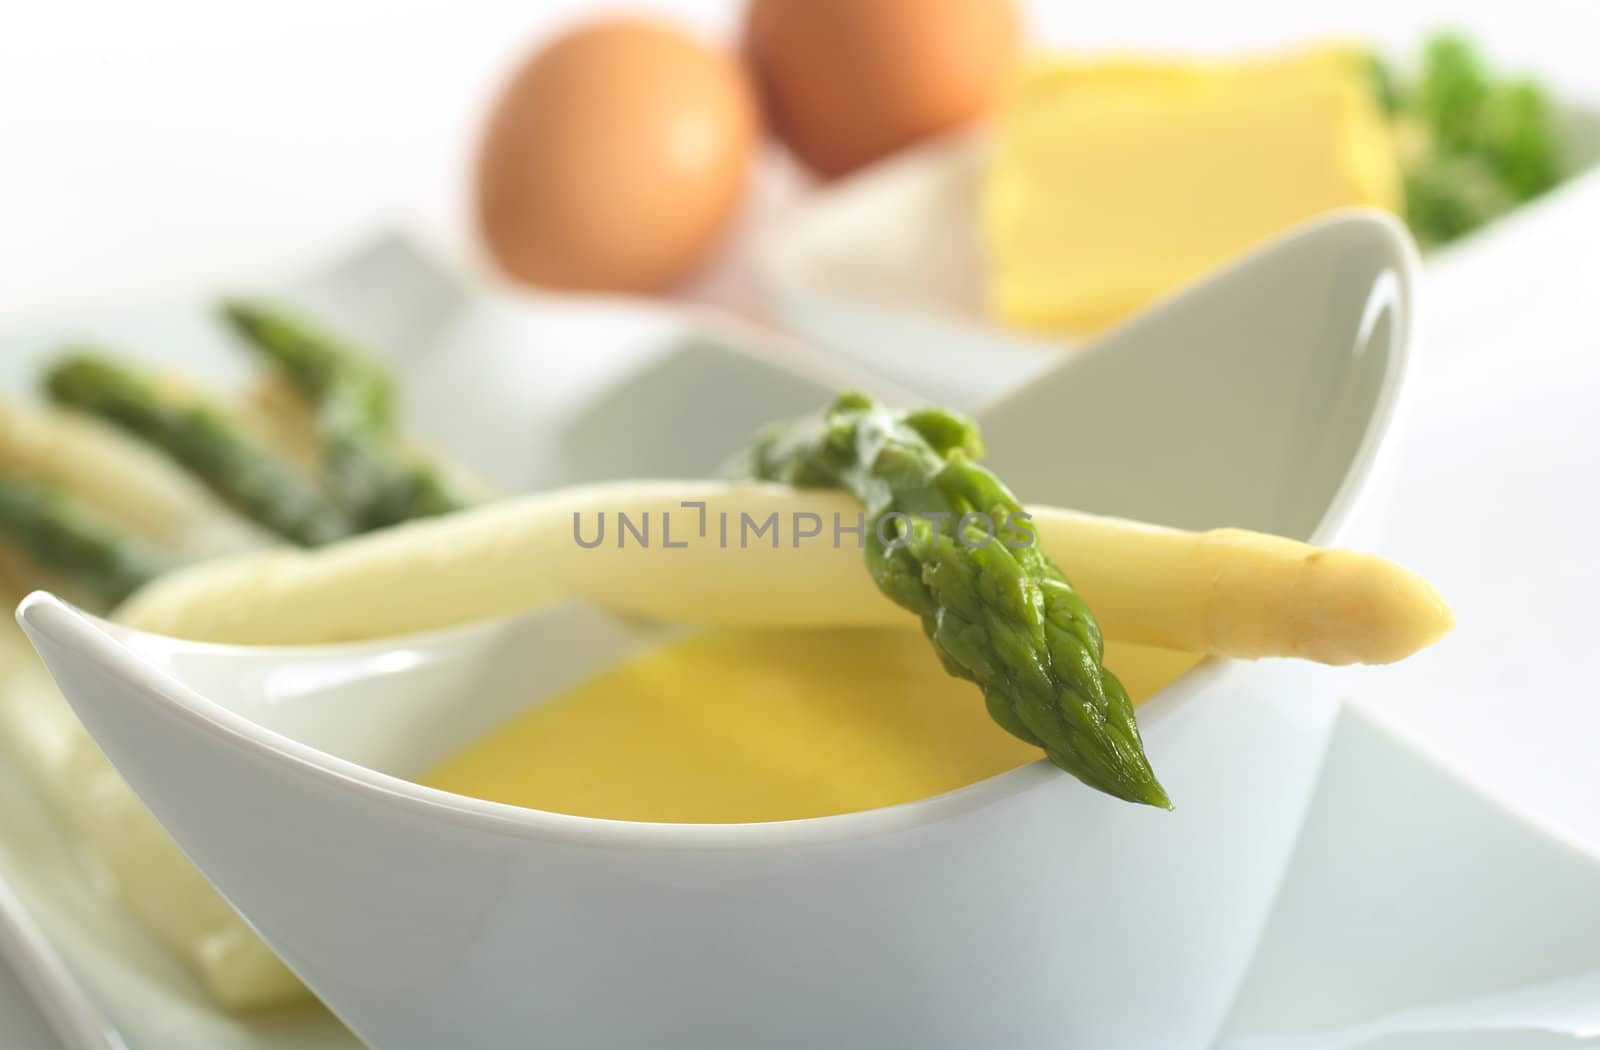 Asparagus with Hollandaise Sauce by ildi